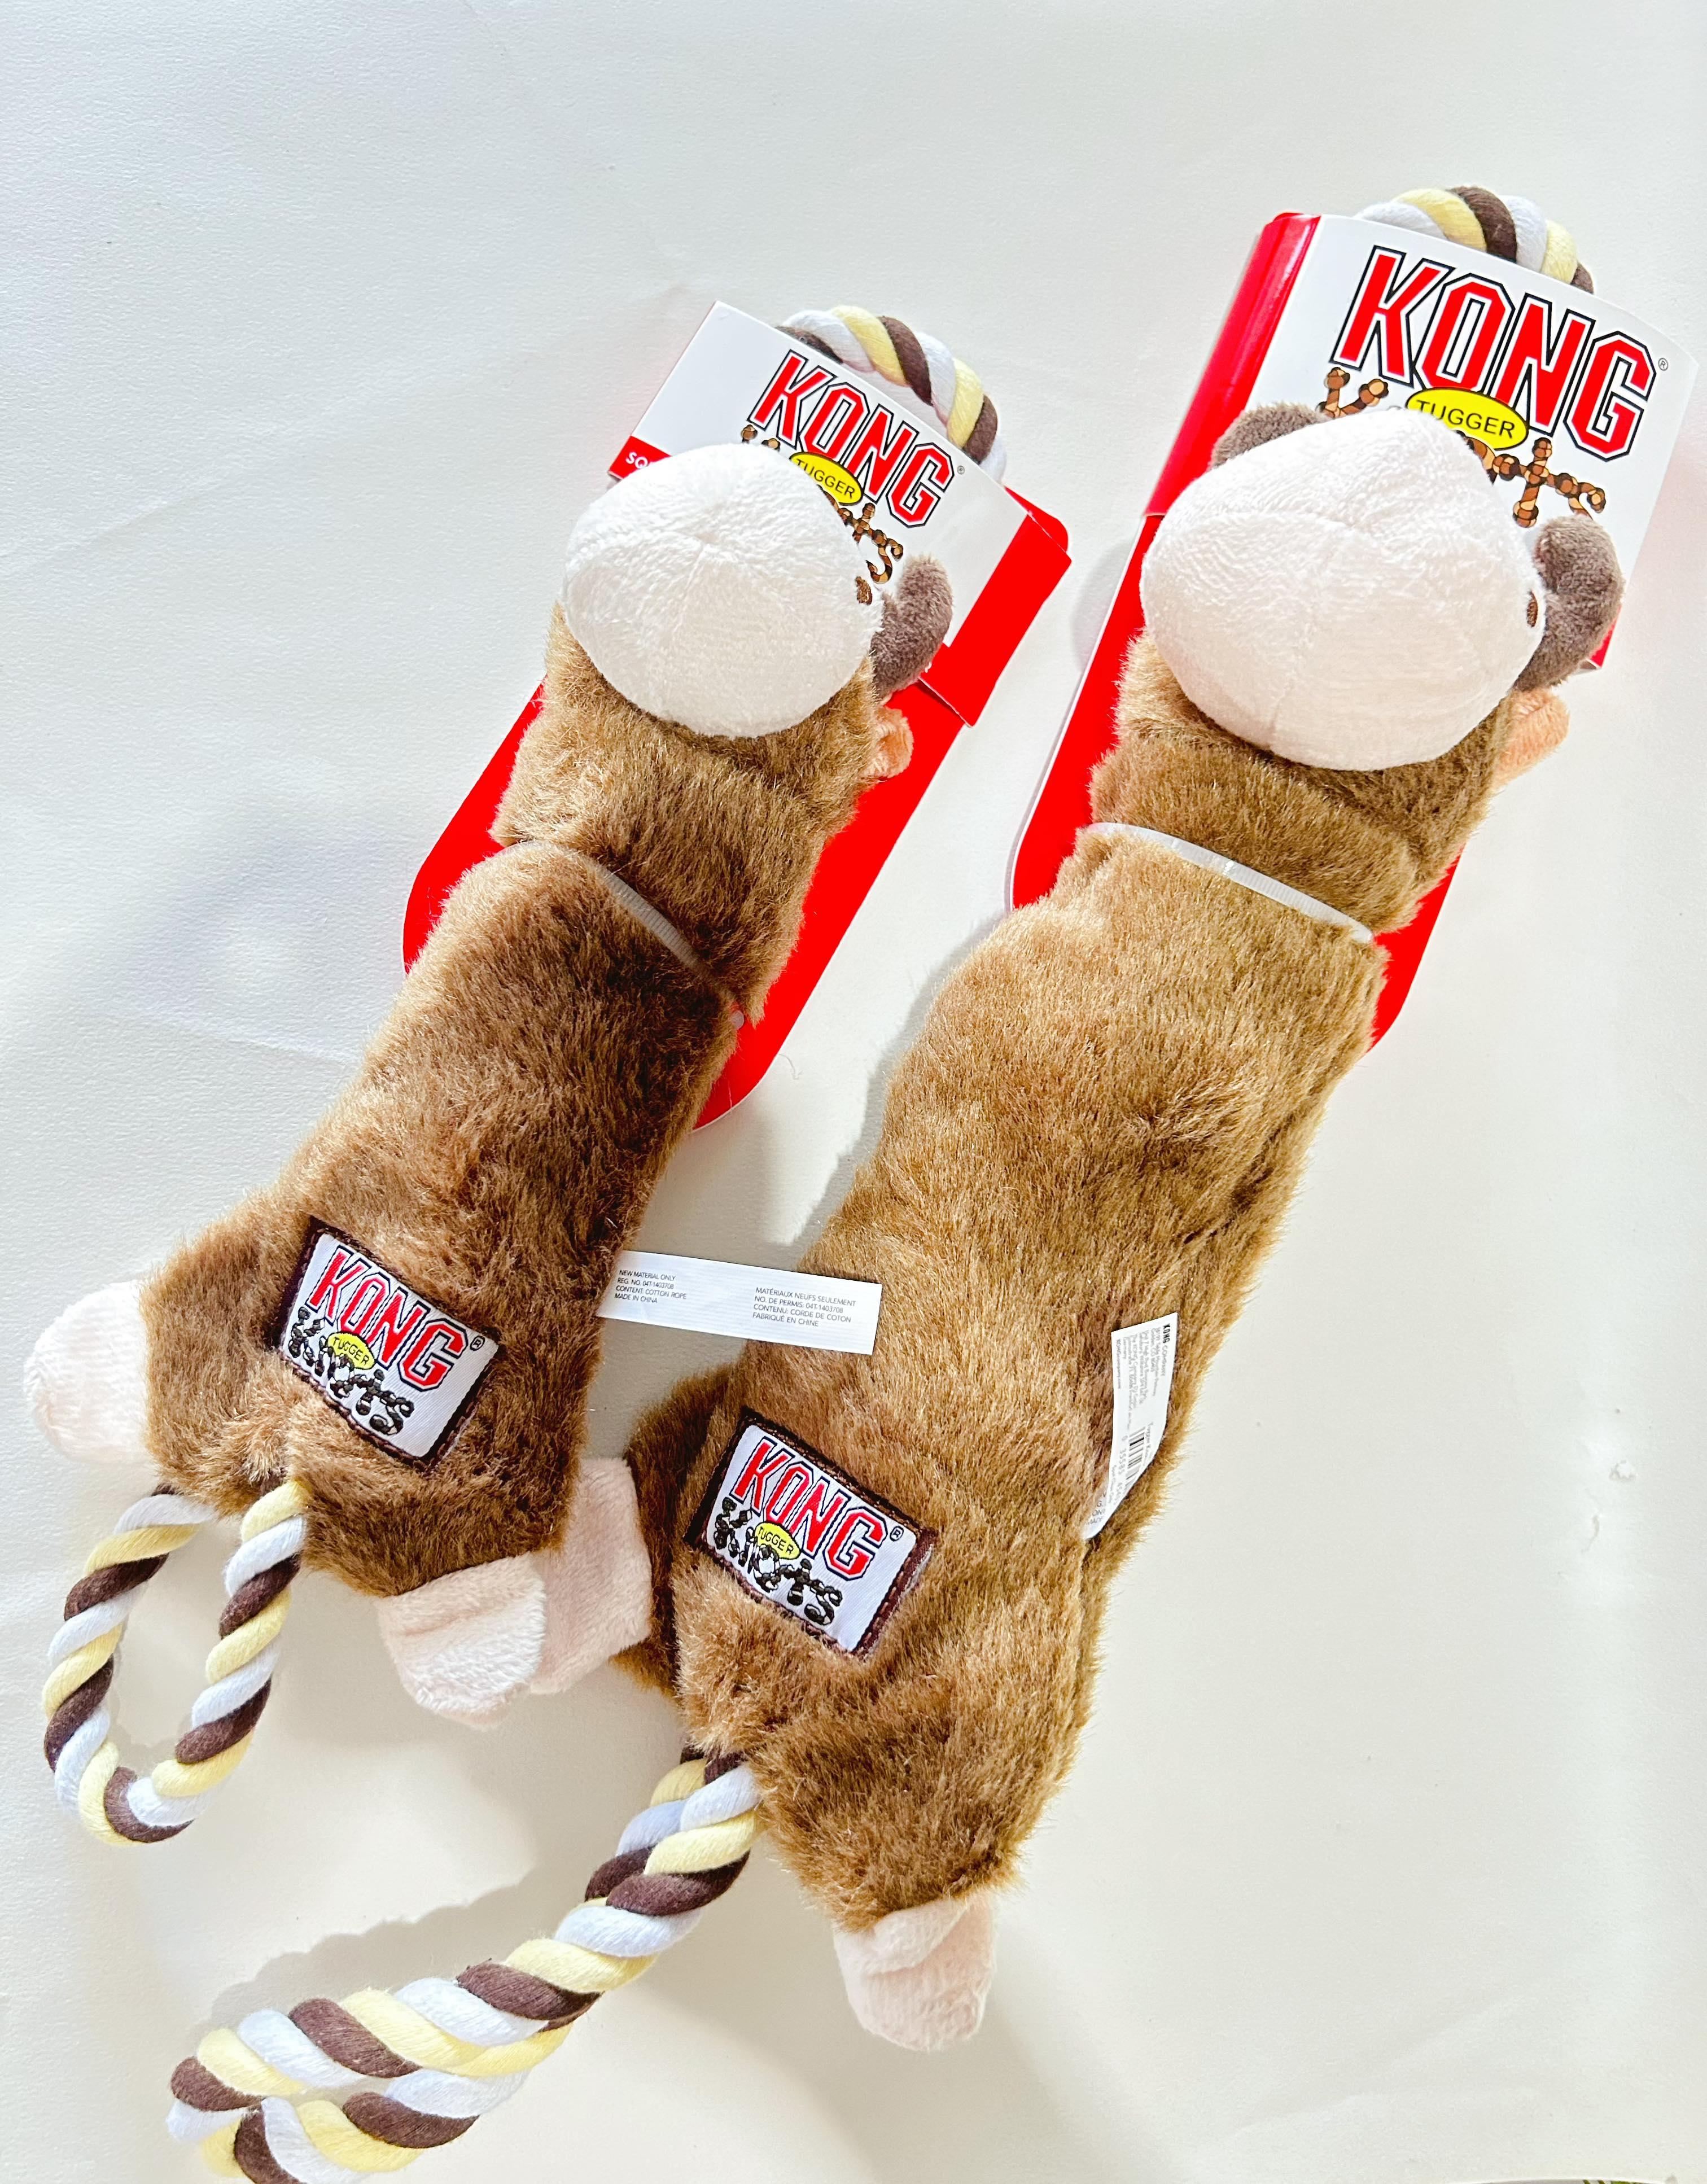 【KONG 犬用繩結絨毛拉扯玩具】耐咬 繩結 造型 青蛙 猴子 麋鹿 中國 狗玩具 狗 玩具